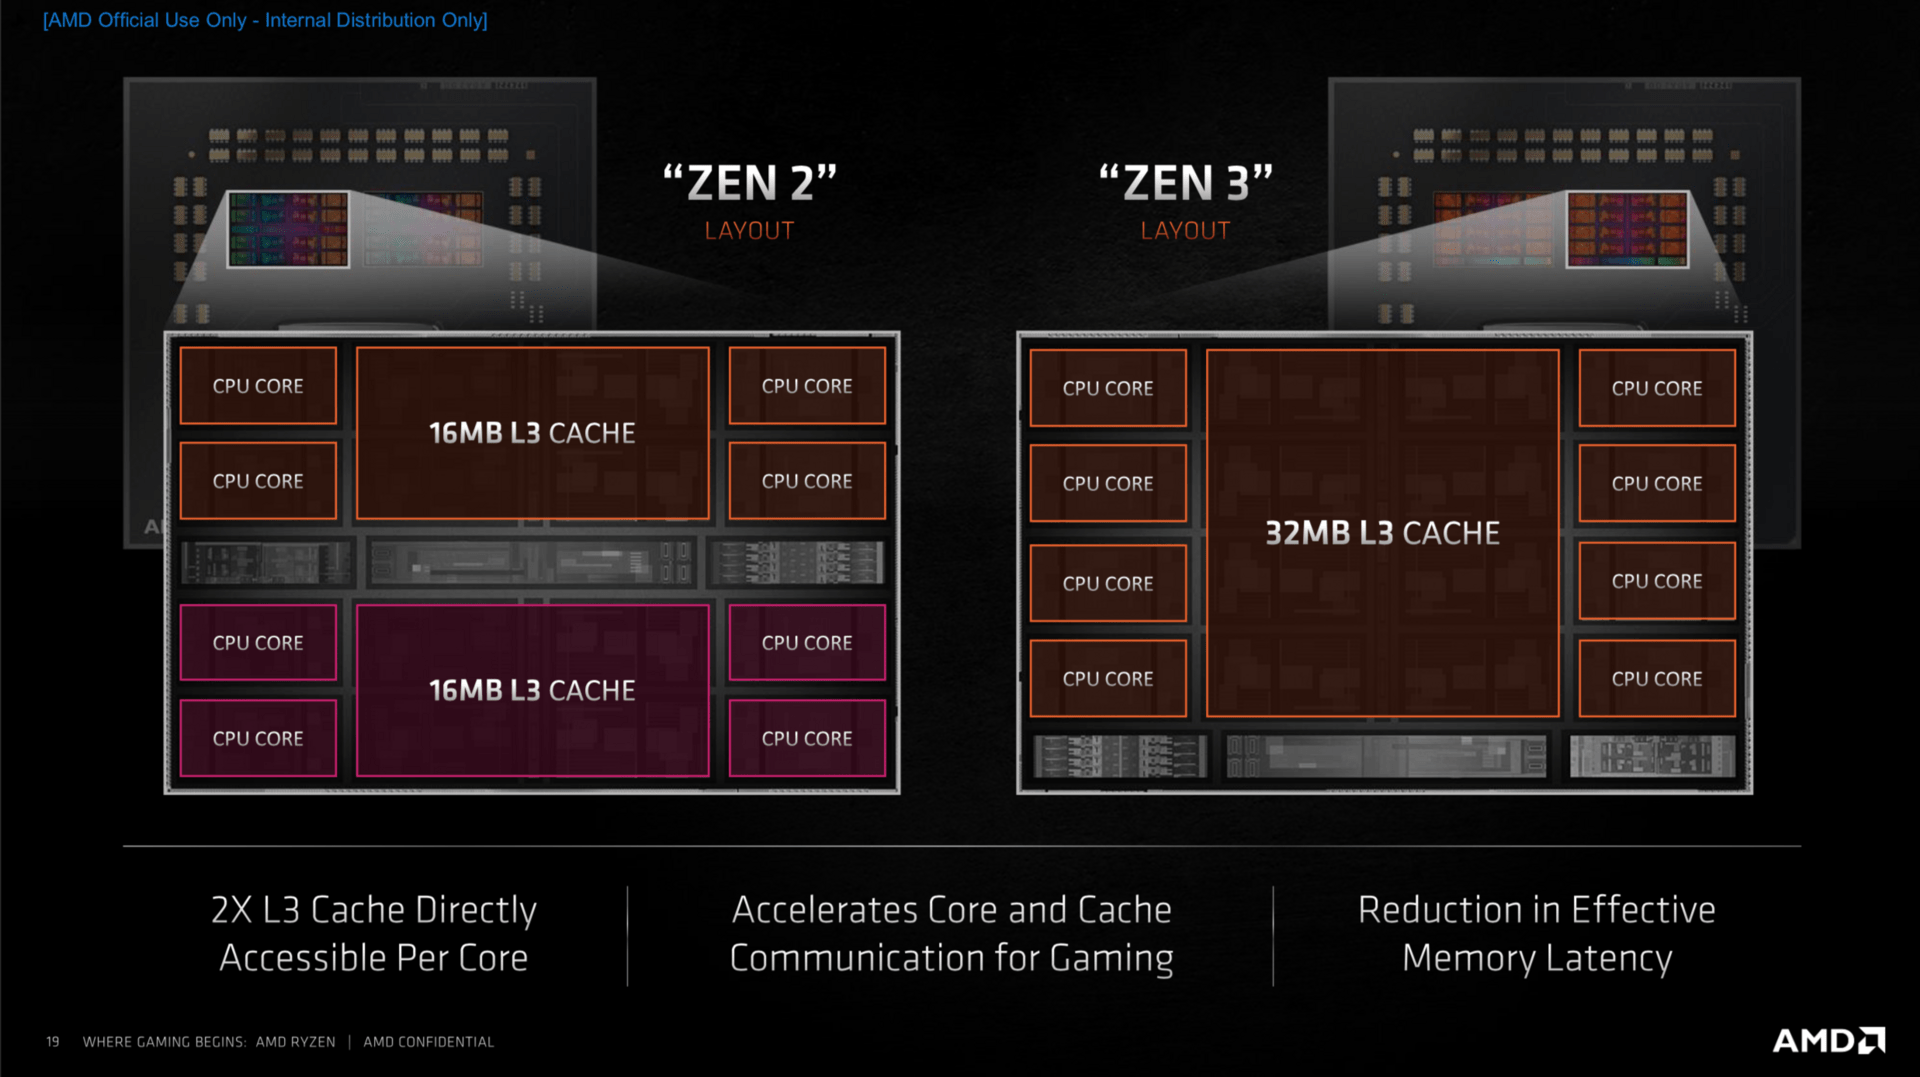 Zen-3-Architektur: Unterschied zu Zen 2 im Aufbau